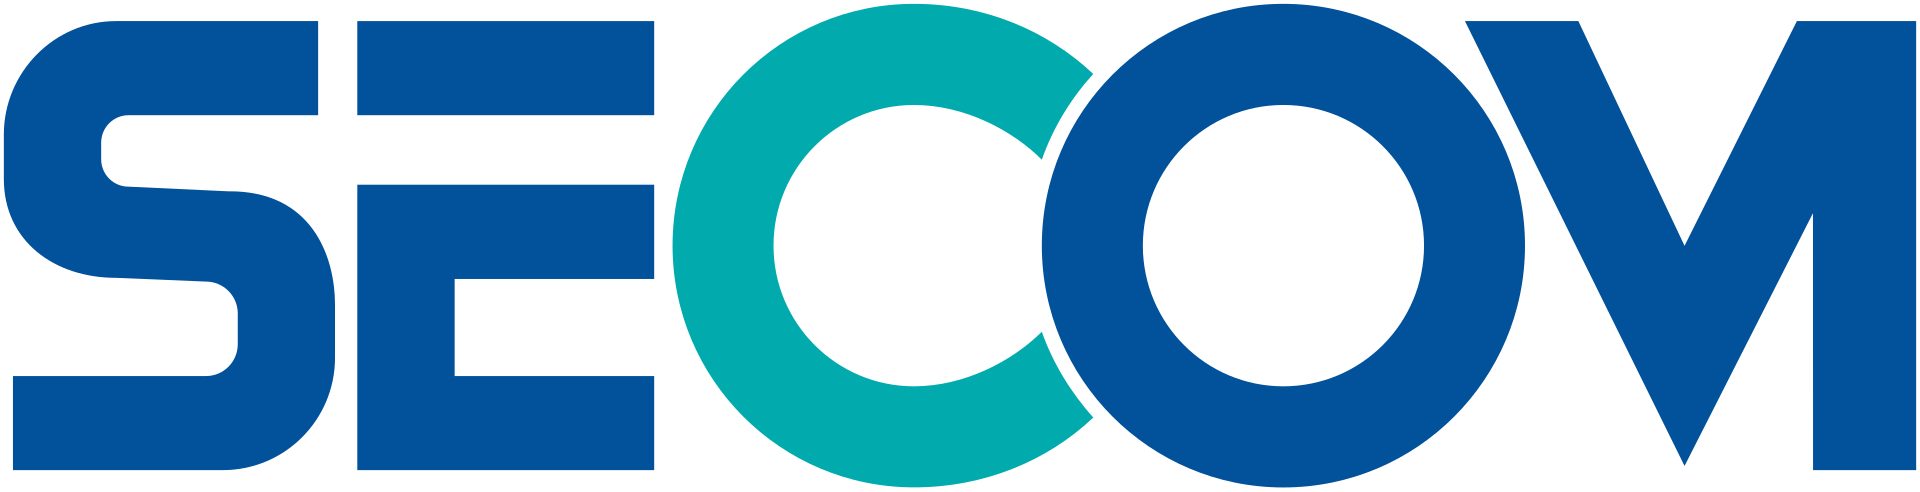 SECOM Brand Logo